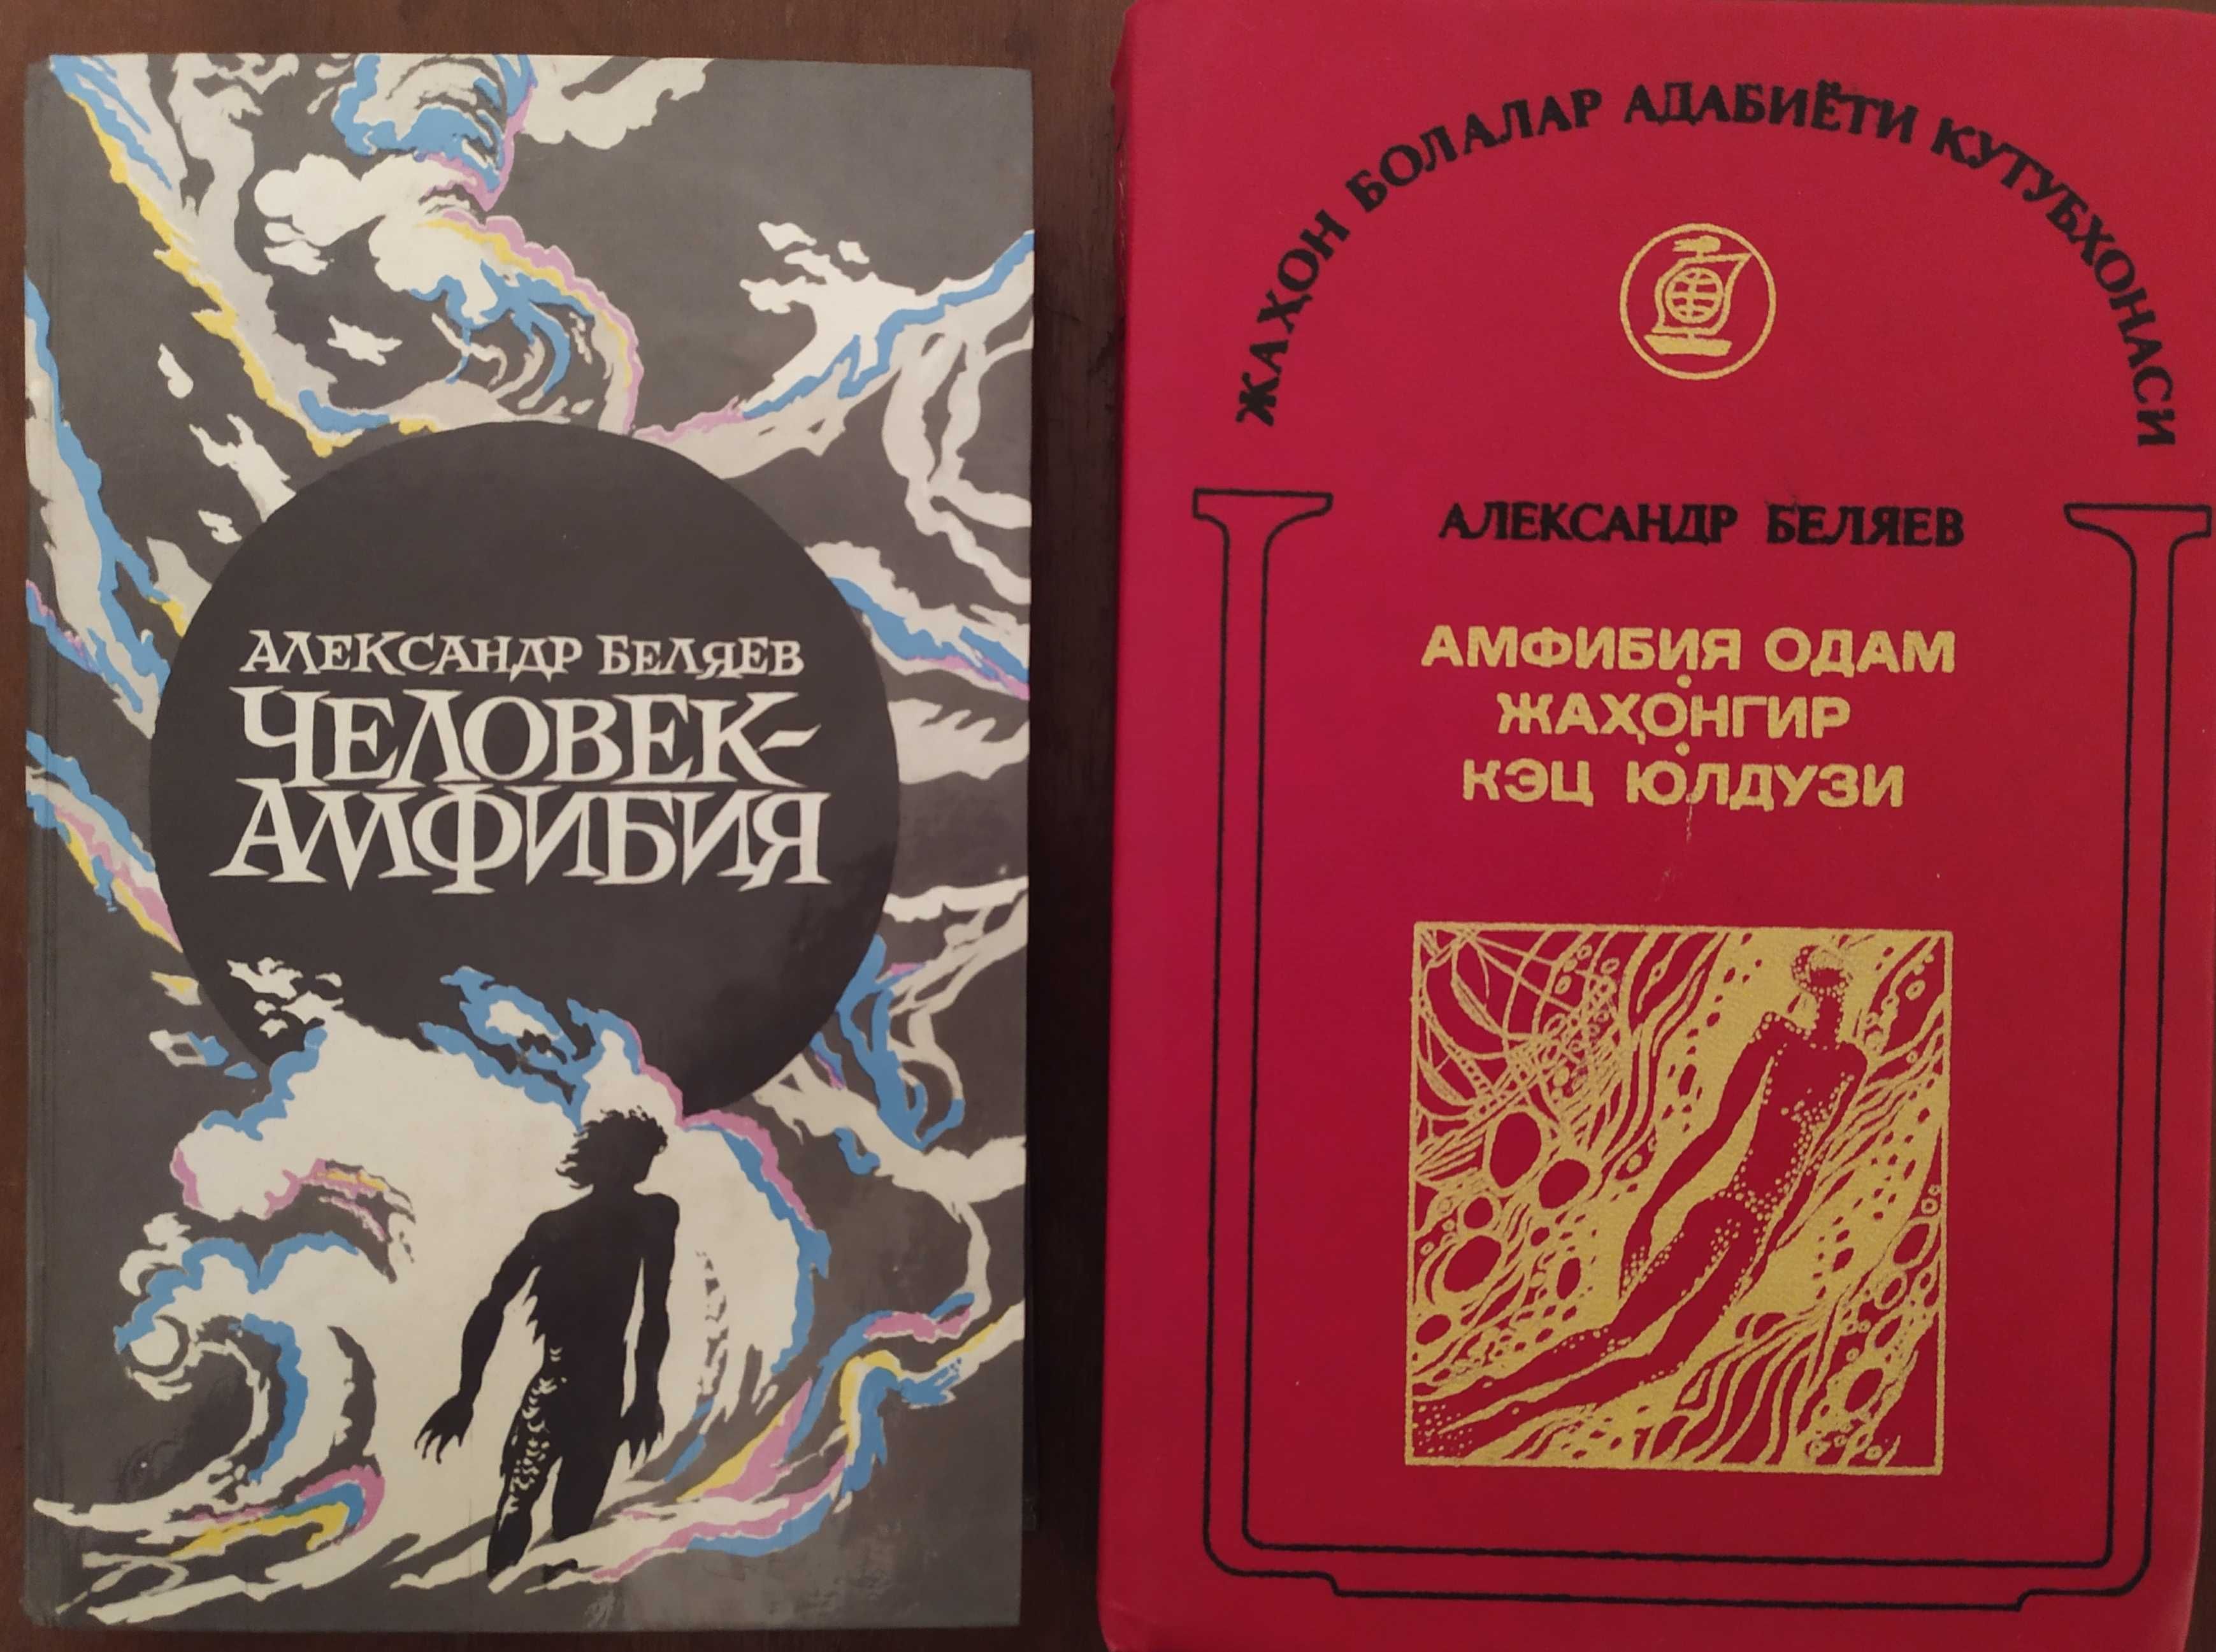 Книги Александра Беляева "Человек-амфибия"